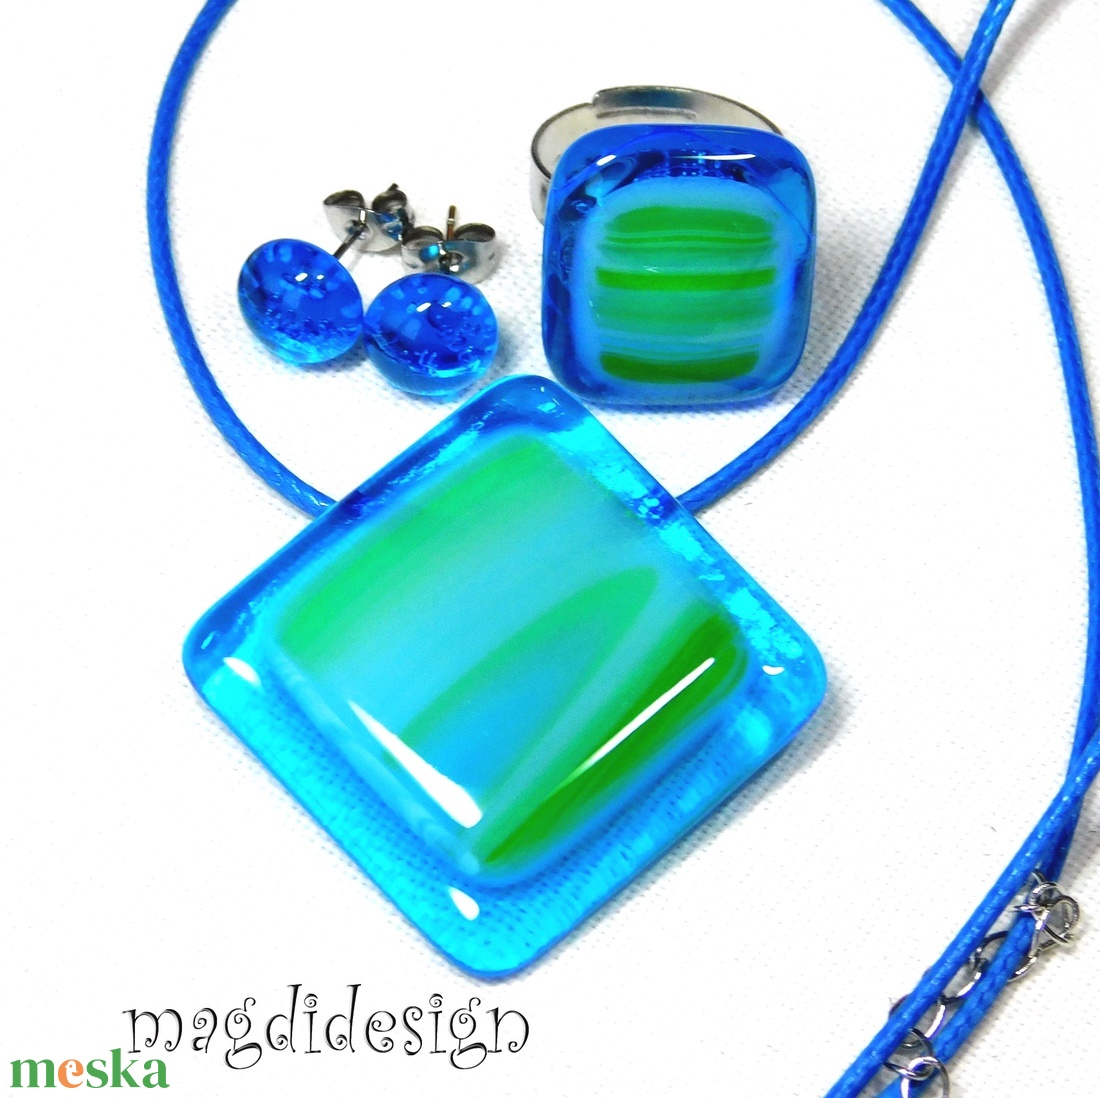 Kék és zöld üvegékszer szett nyaklánc, gyűrű,  pötty fülbevaló - ékszer - ékszerszett - Meska.hu